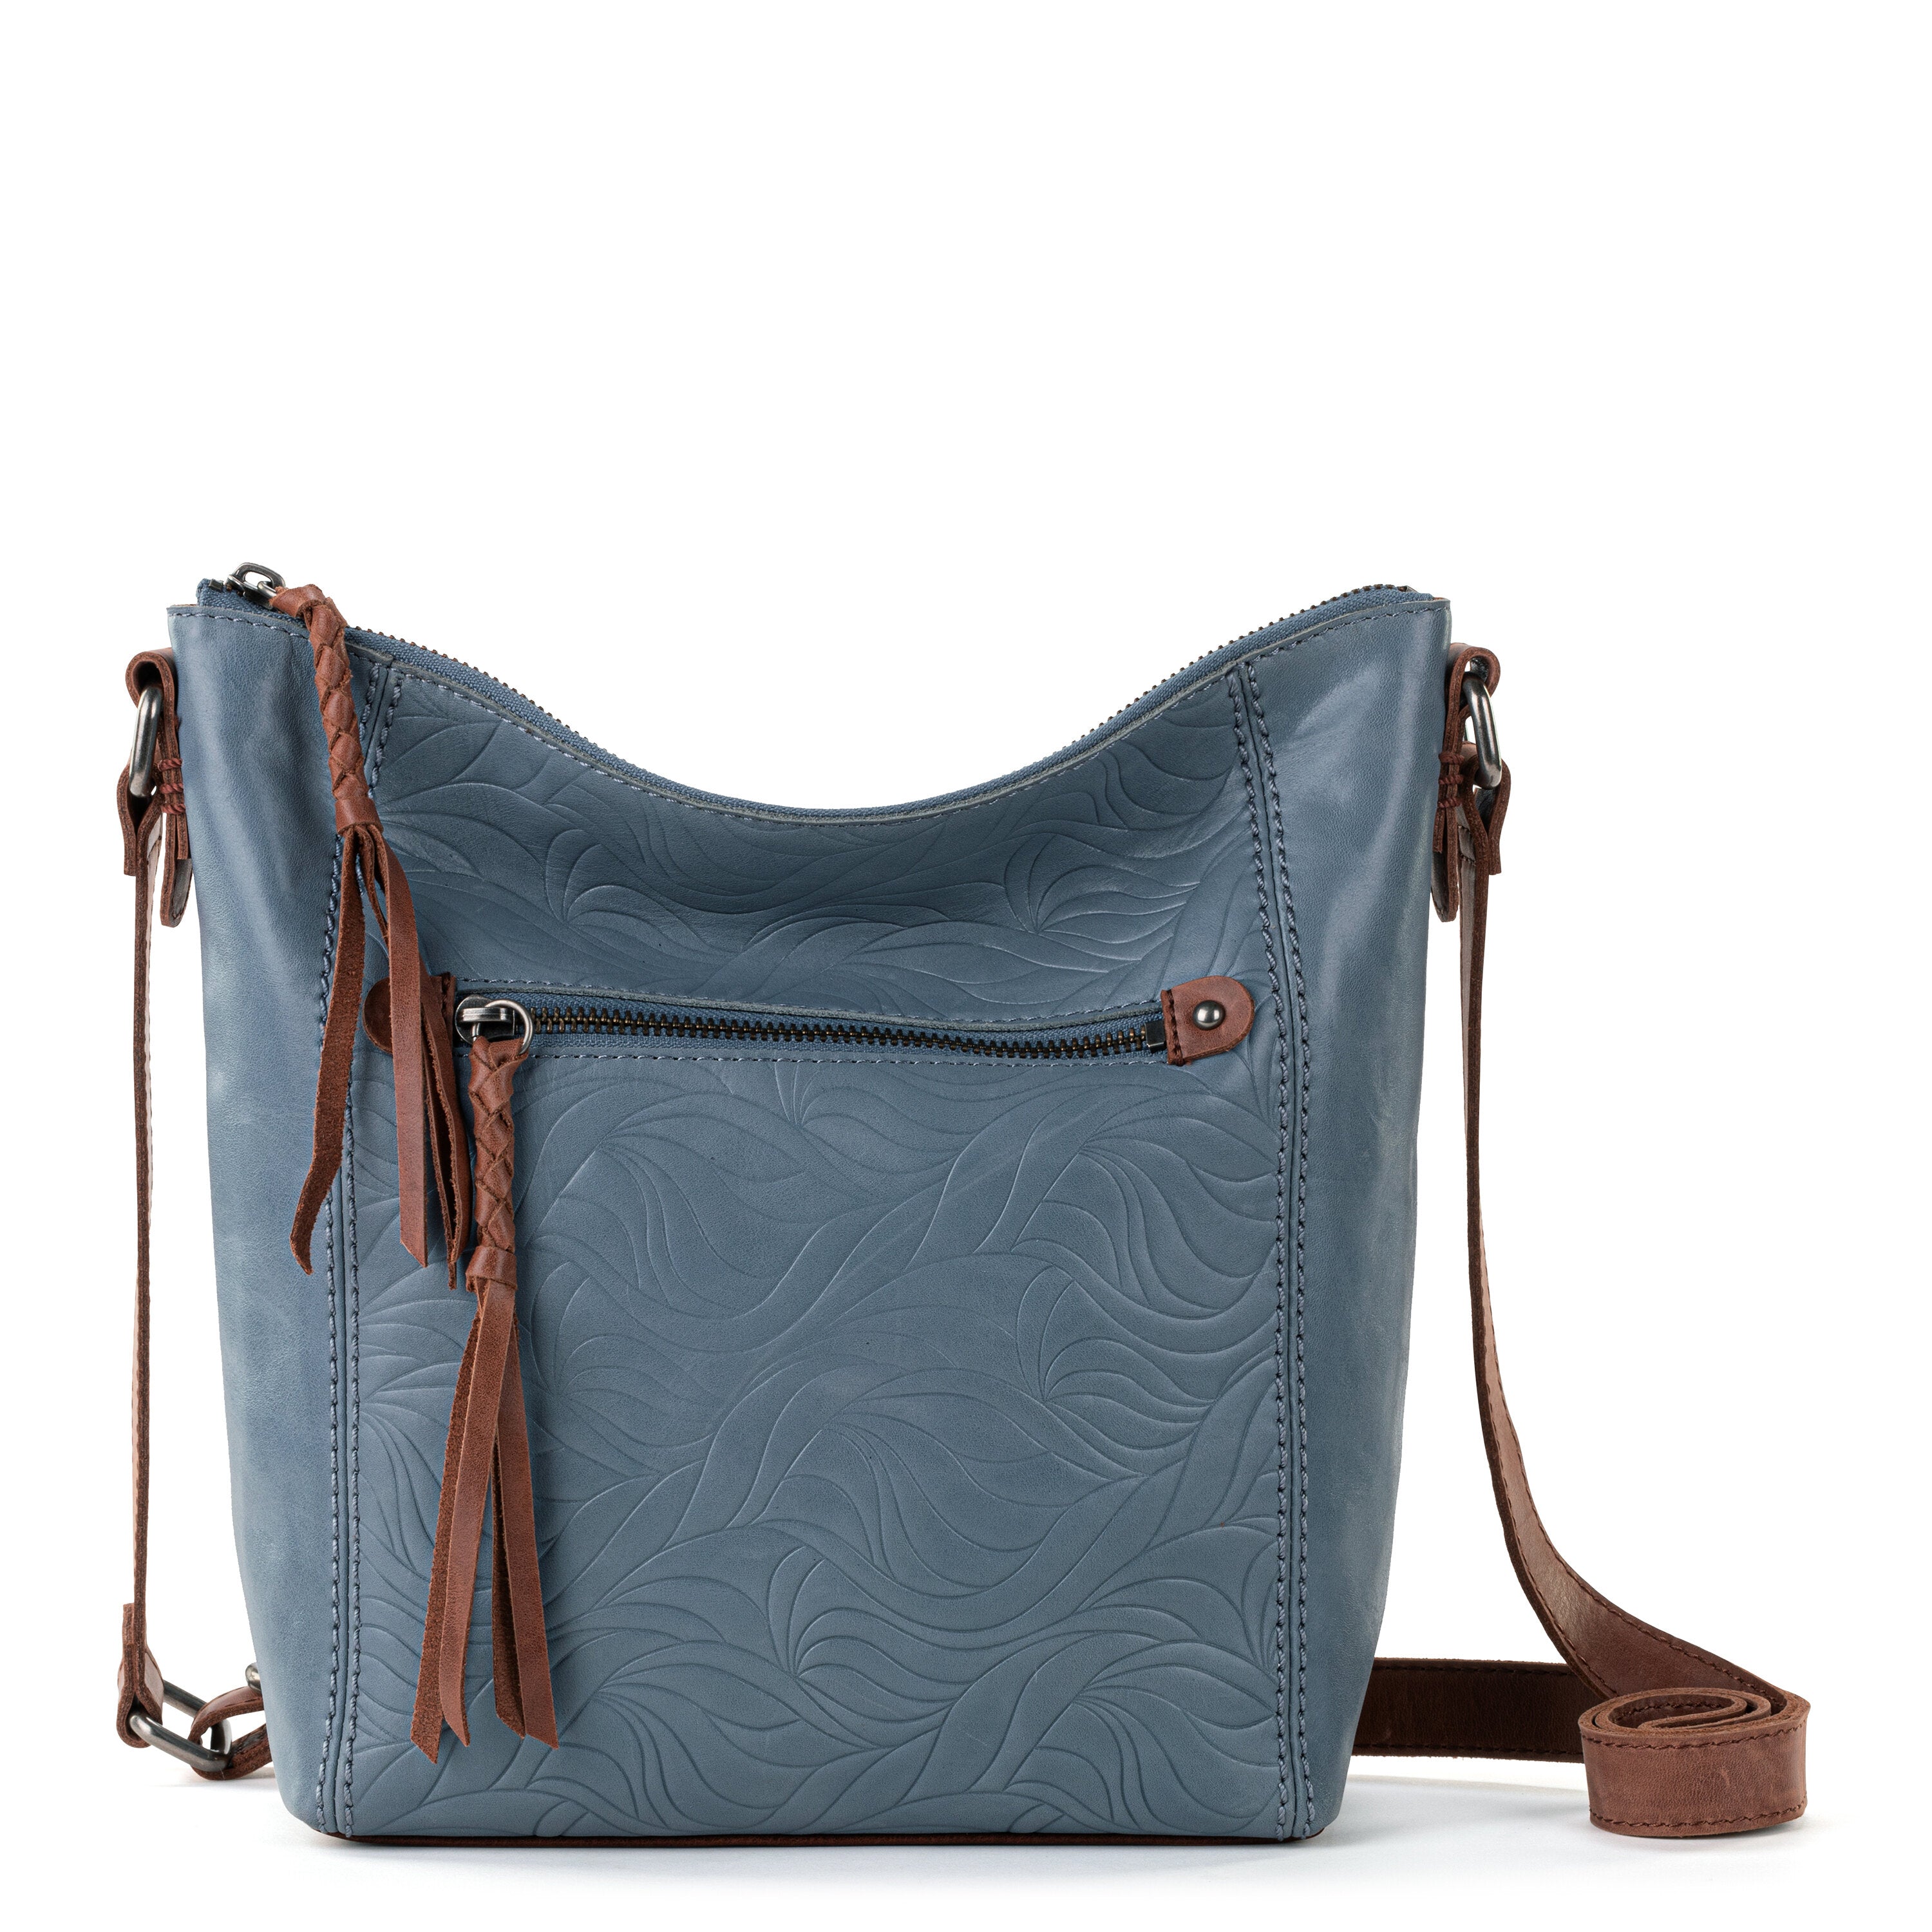 The Sak Tooled Leather Shoulder Bag Purse Brown Floral VGUC | eBay